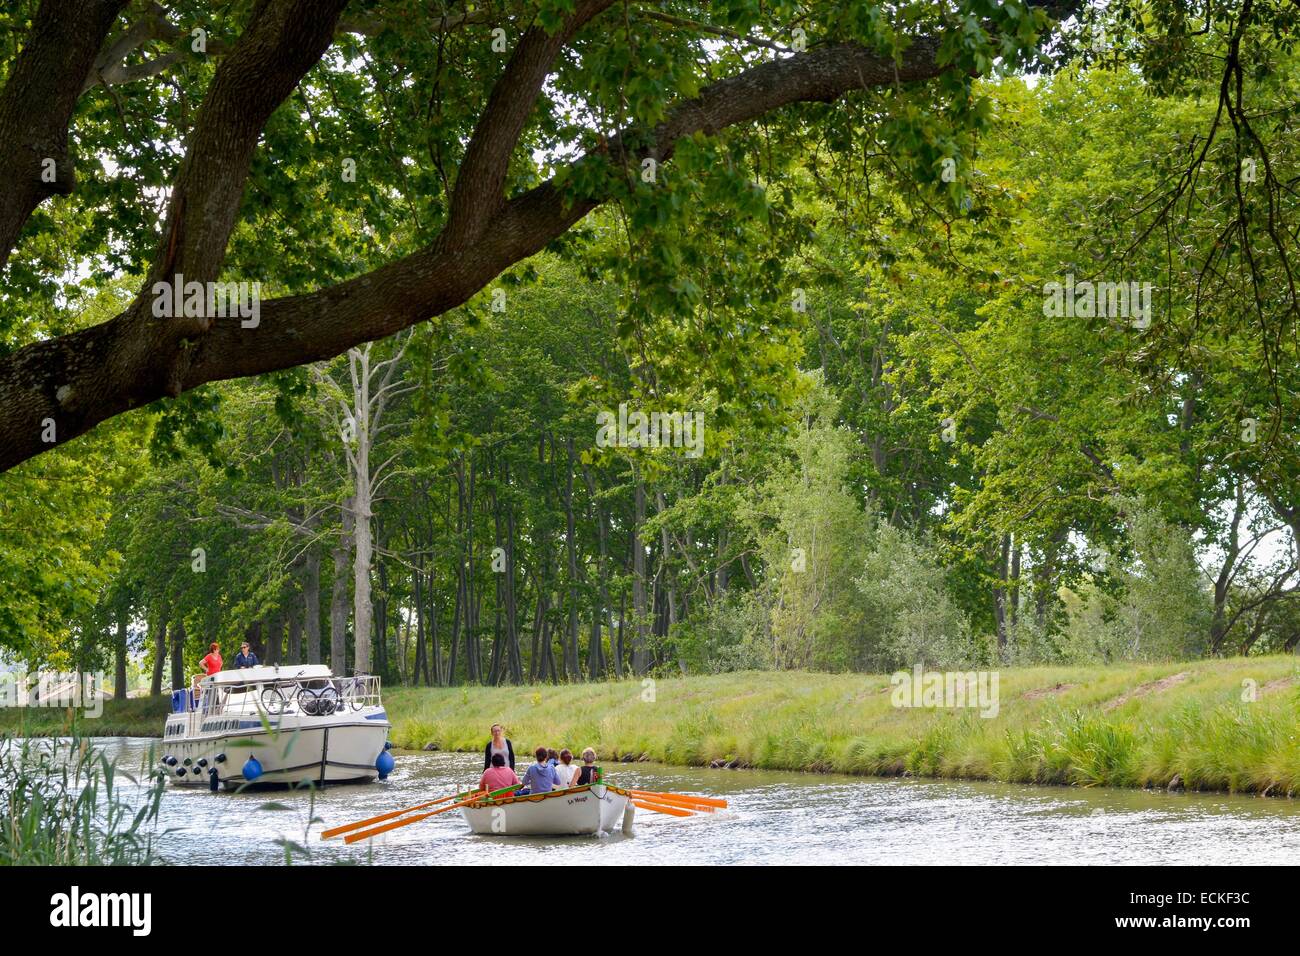 La France, l'Hérault, Narbonne, le Canal du Midi classé au Patrimoine Mondial de l'UNESCO, lieu dit La Croisade, bateau traditionnel suivi d'un yacht avec les arbres en arrière-plan Banque D'Images